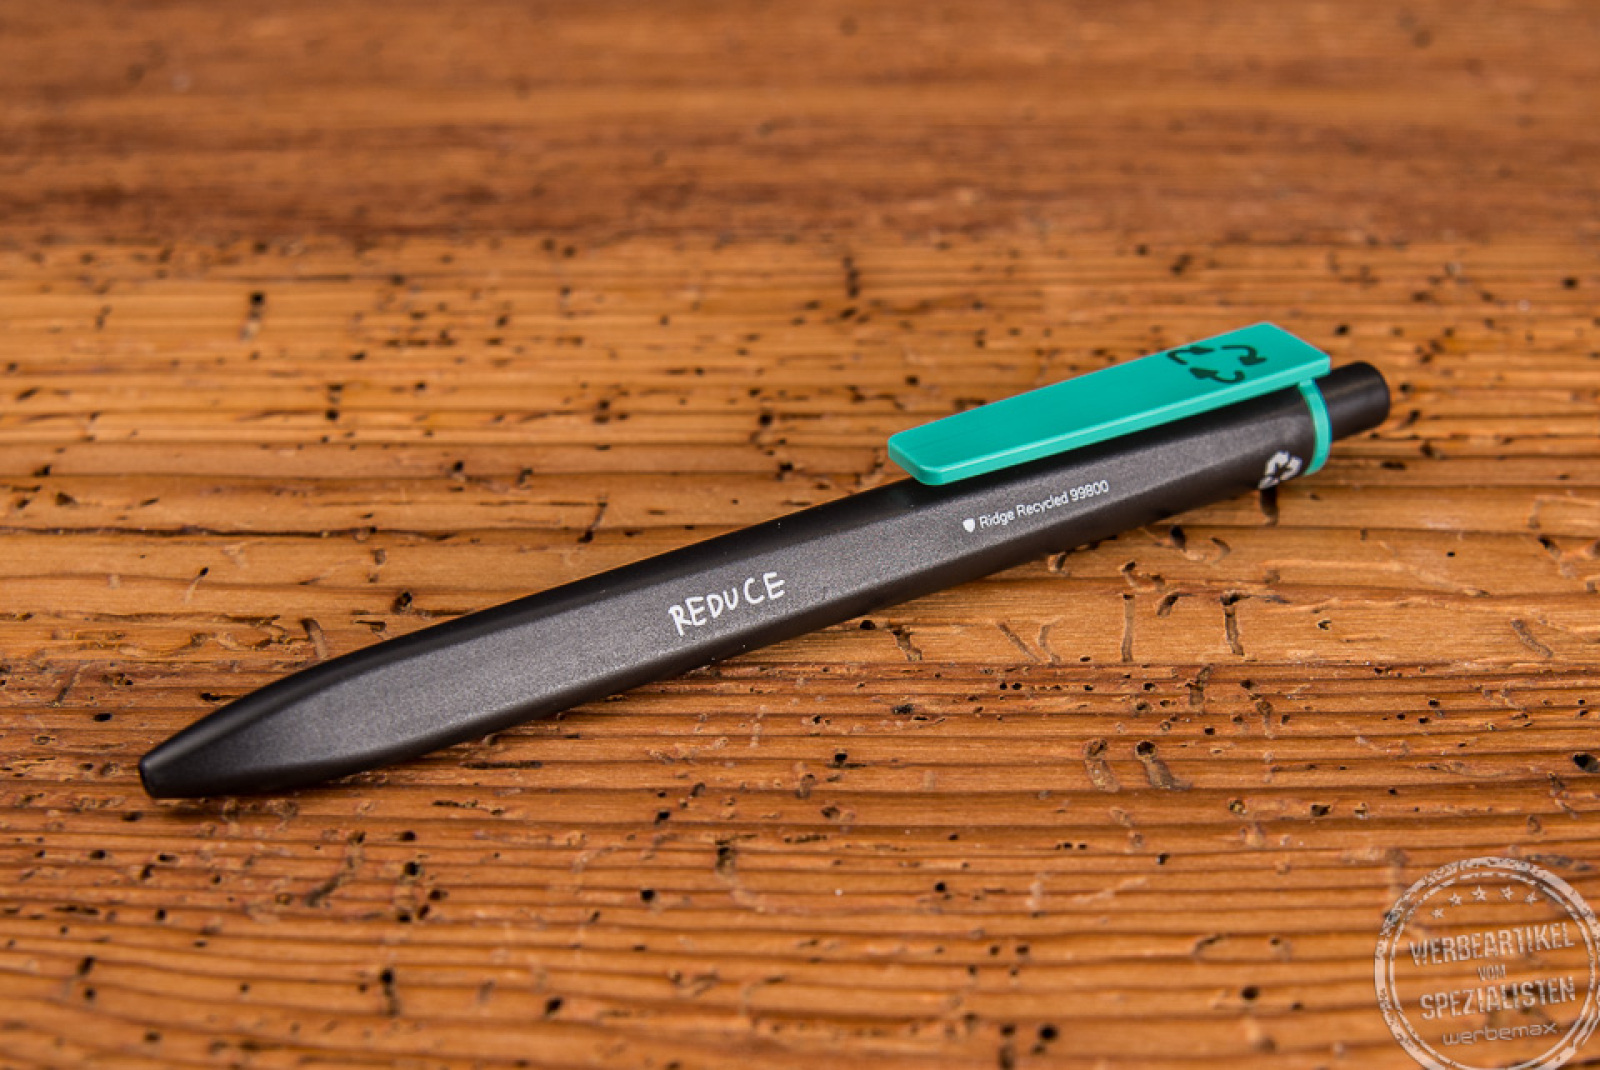 Schwarzer Kugelschreiber Ridge Recycled von Ritter Pen mit grünem Metallclip als Werbegeschenk. 